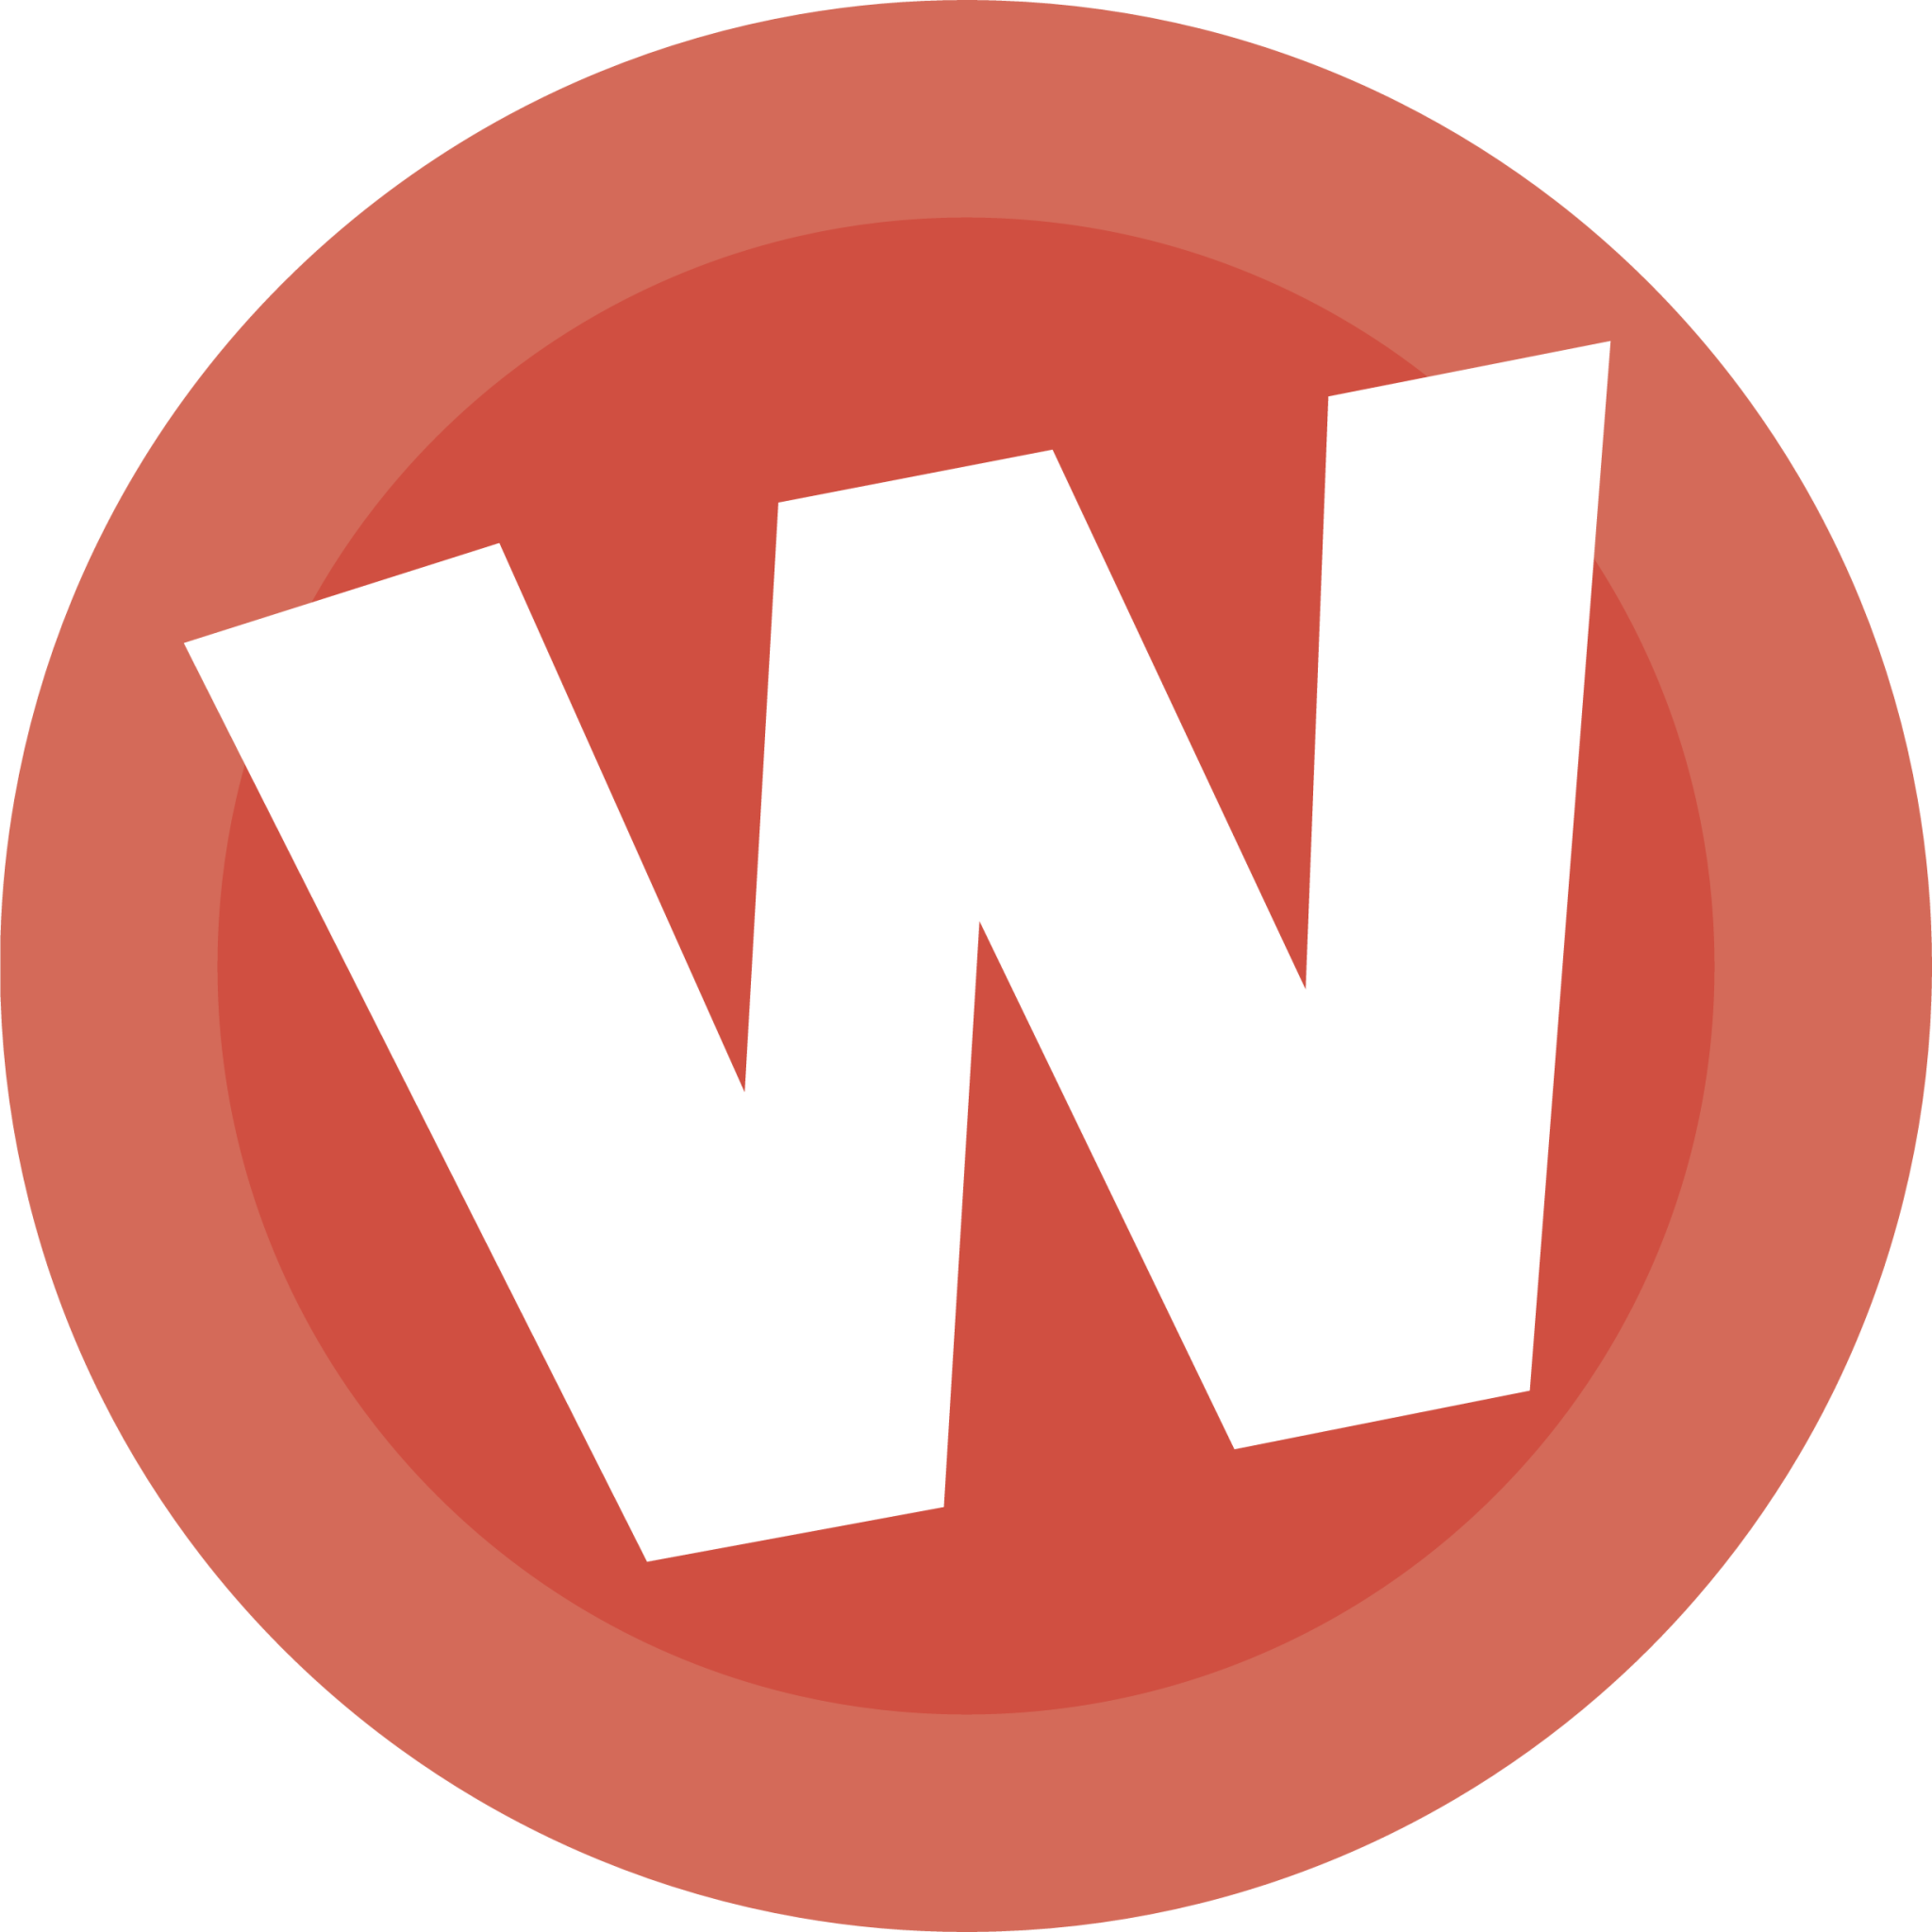 Wufoo logosu